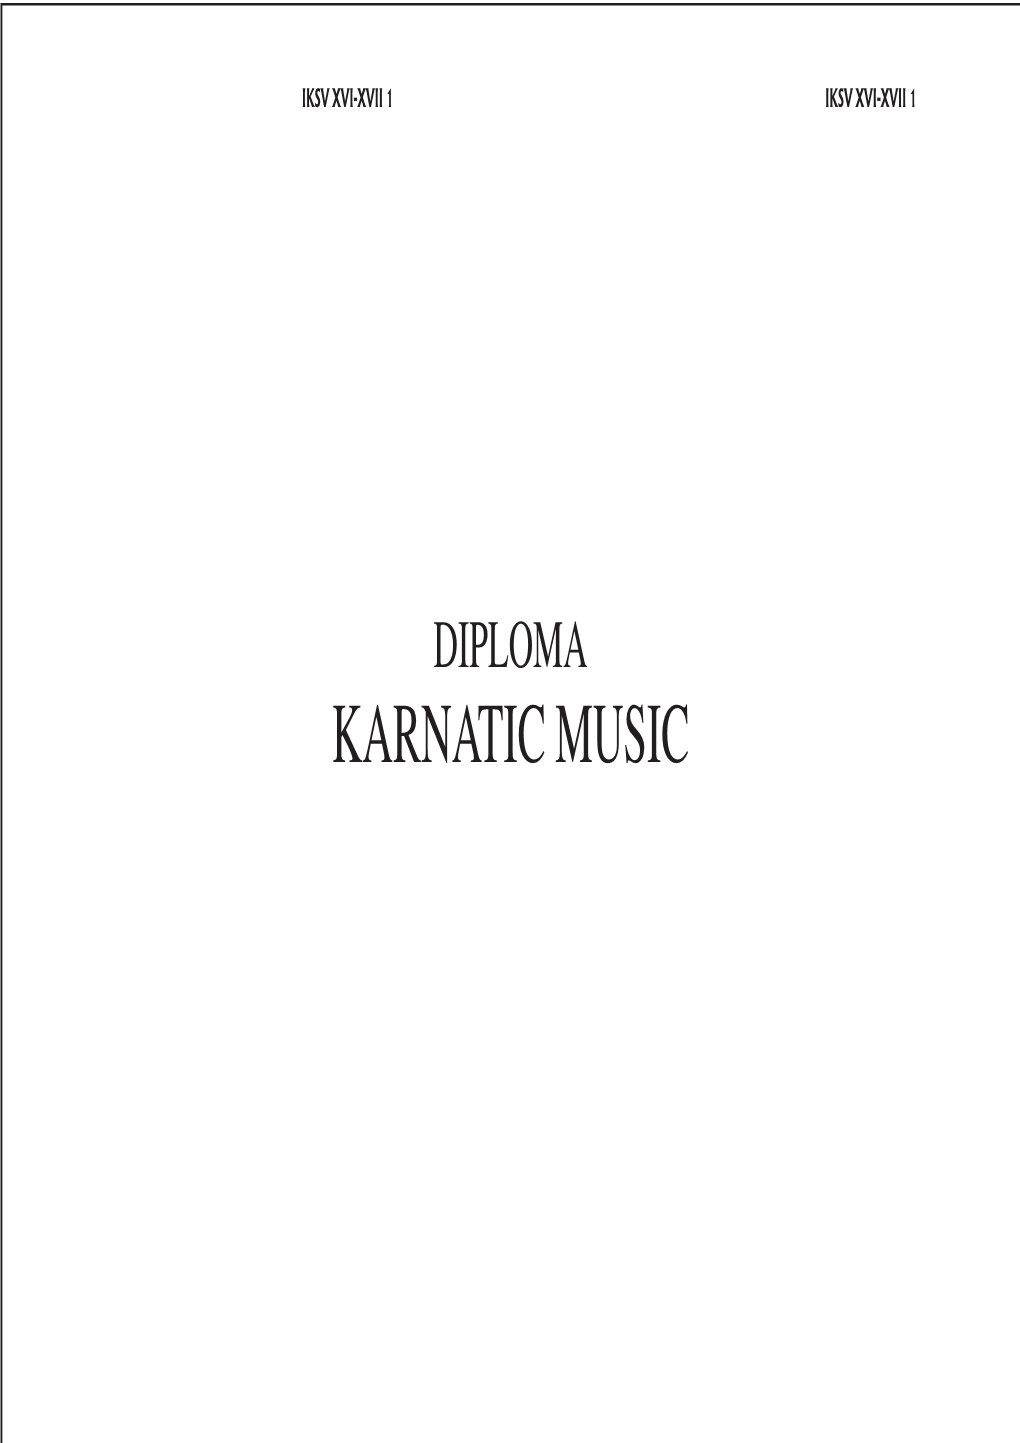 Diploma Karnatic Music